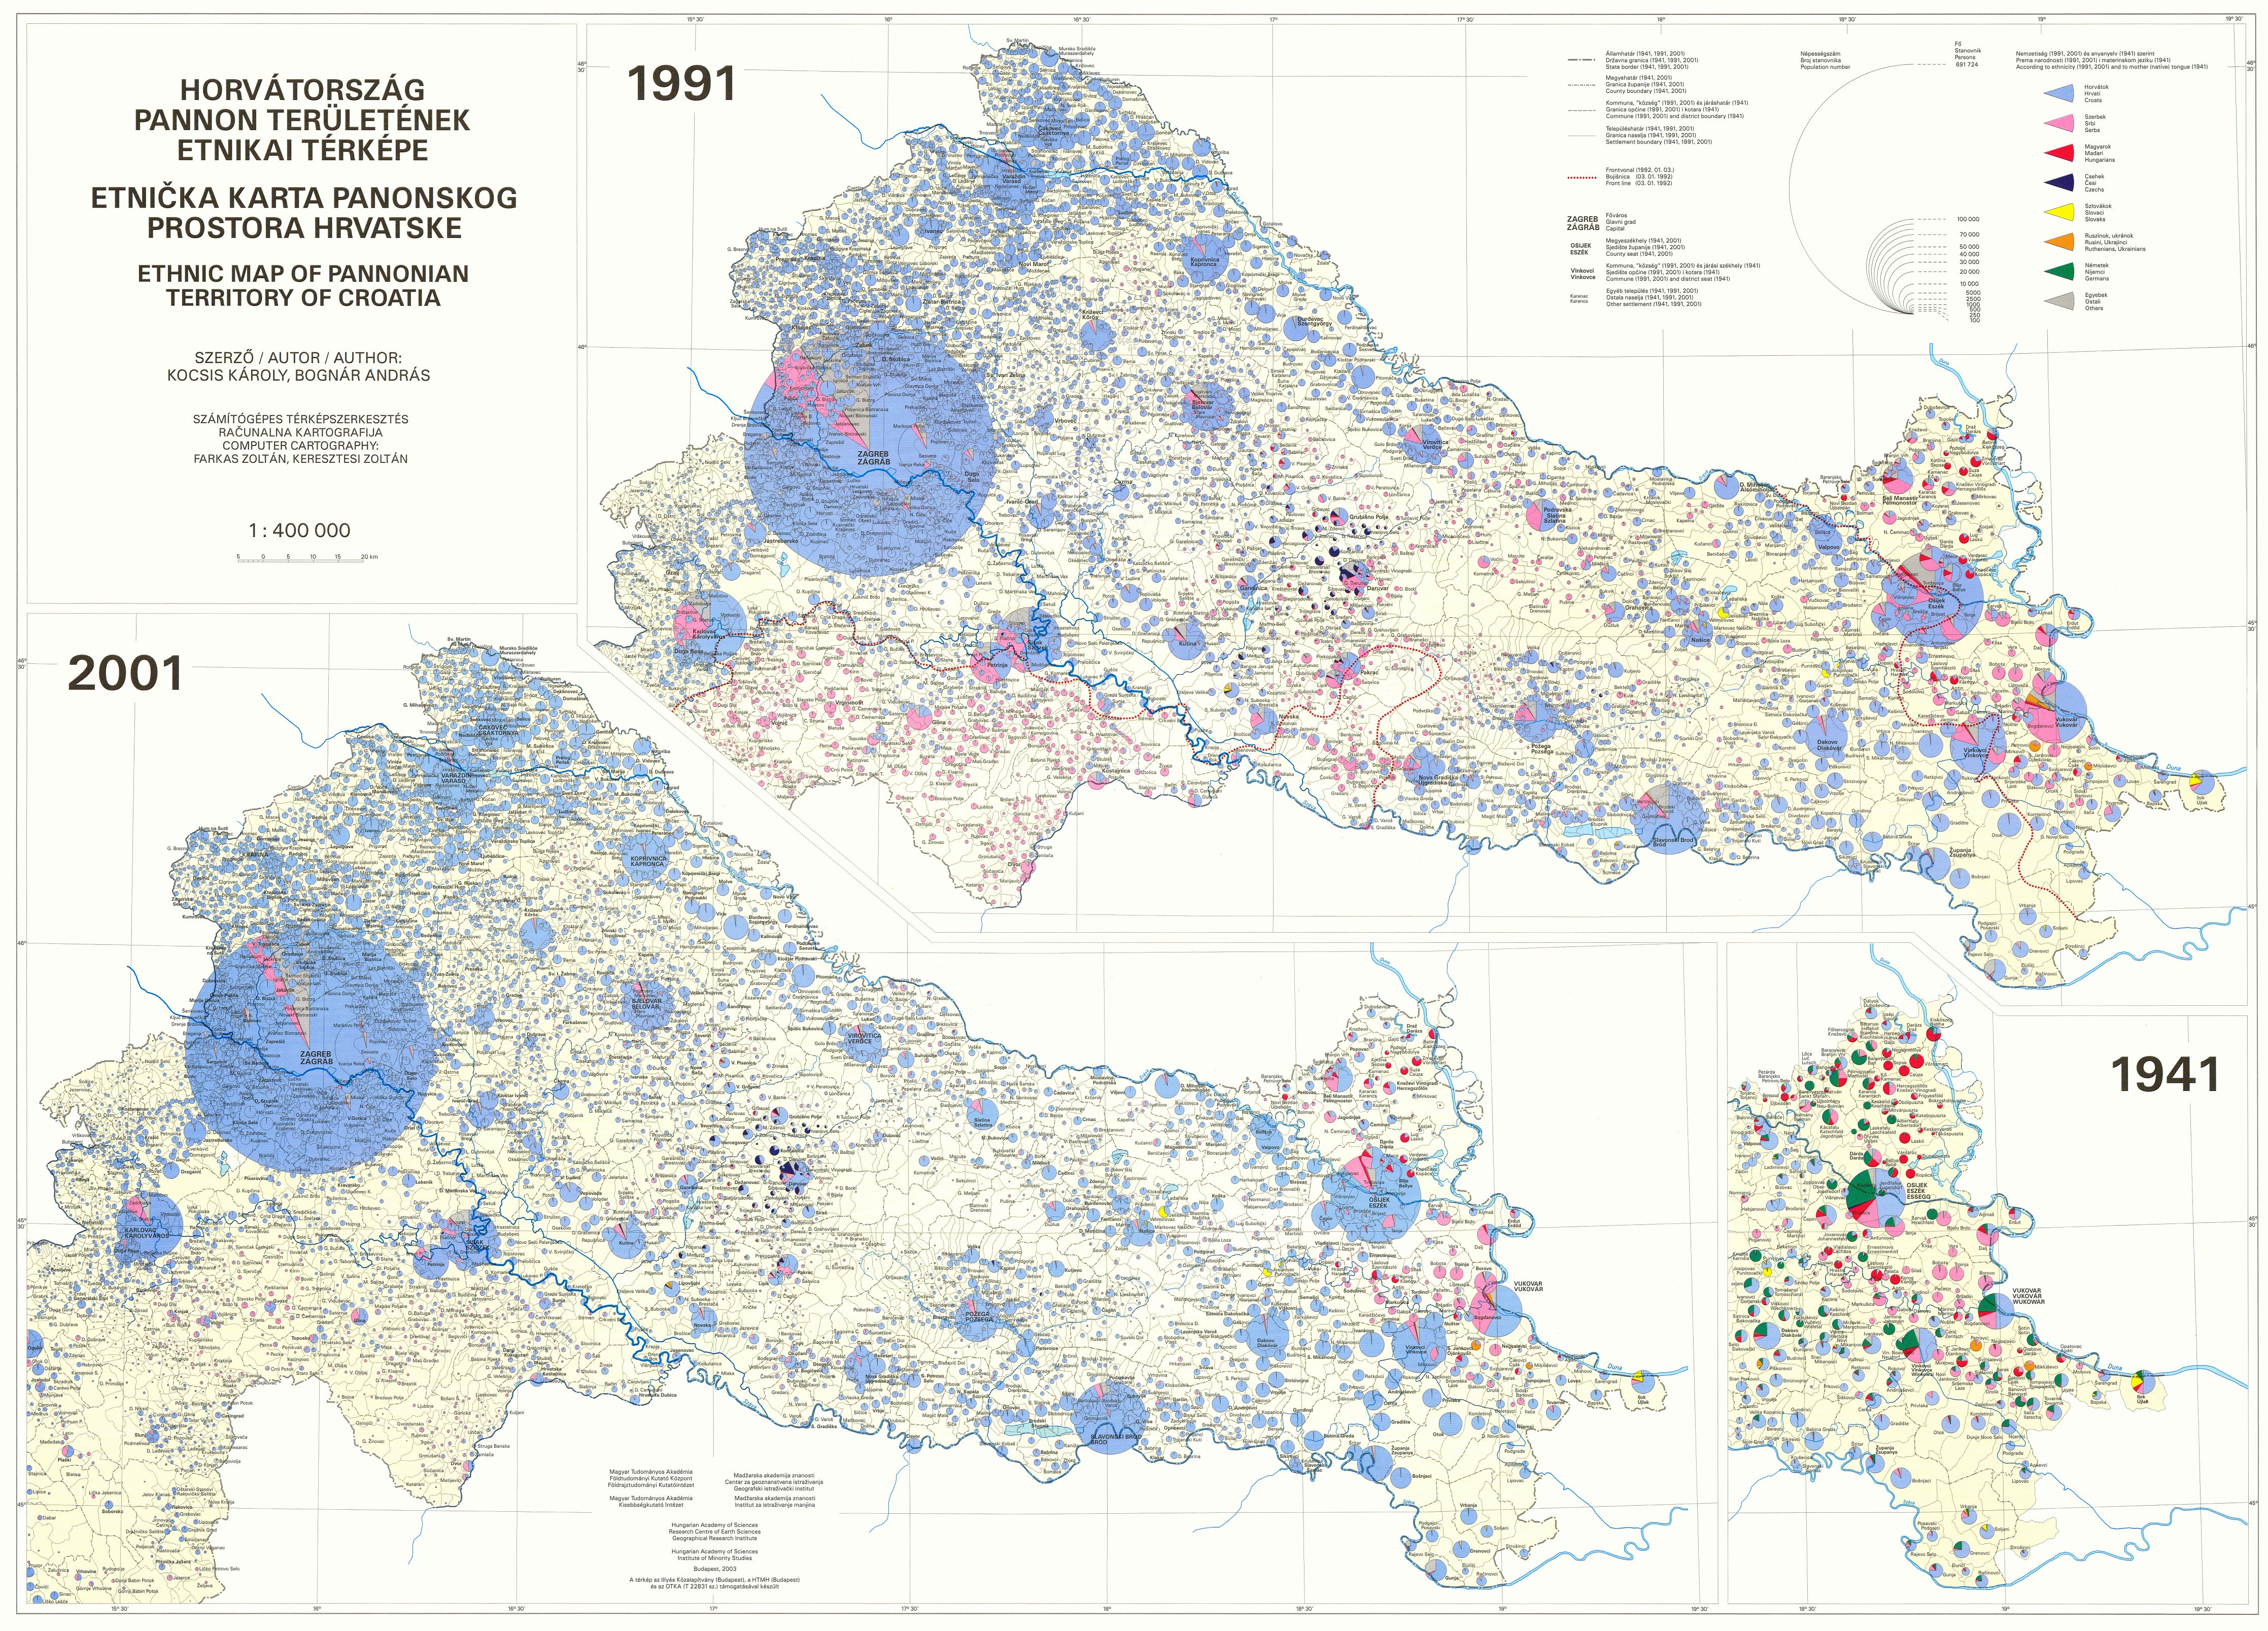 topografska karta hrvatske download Karte linija razgraničenja   Stranica 2   Forum.hr topografska karta hrvatske download